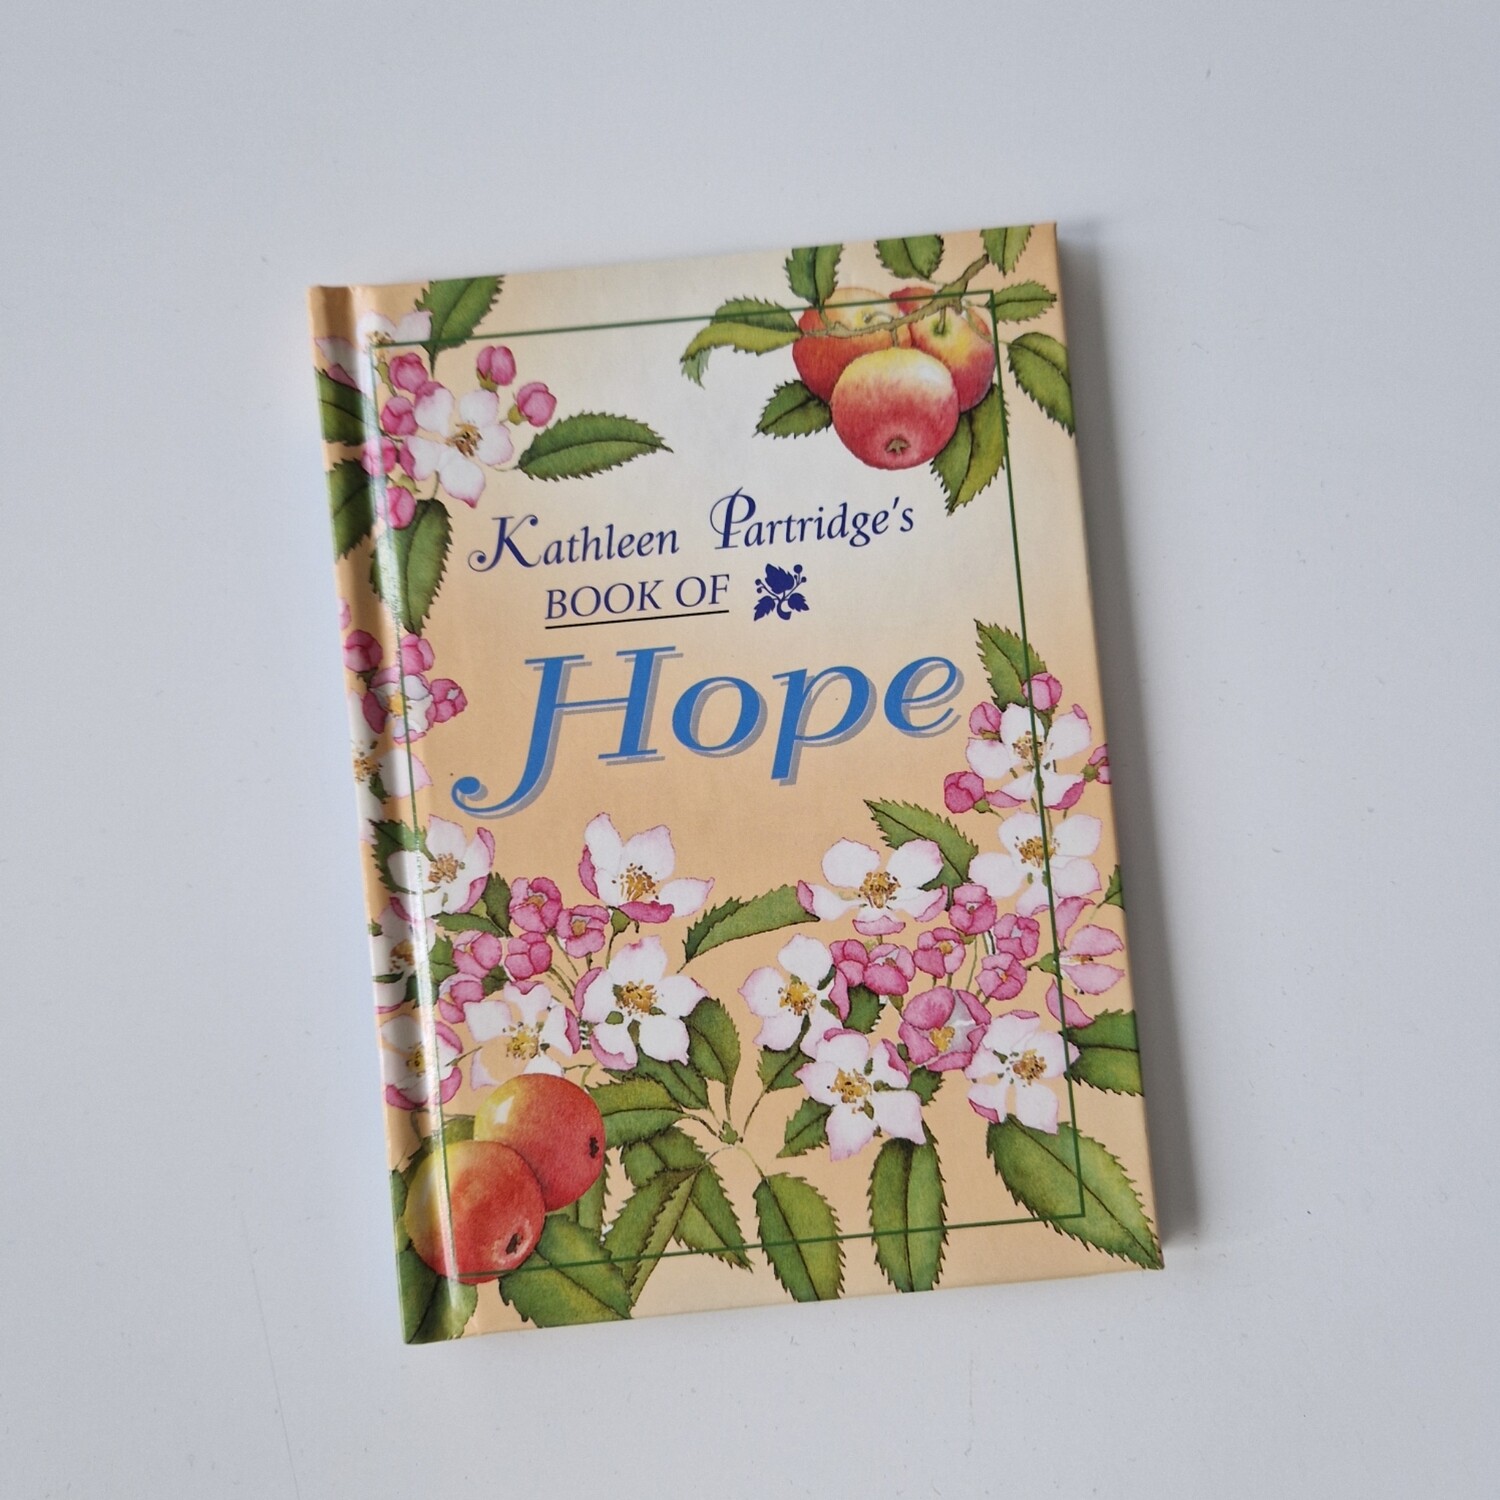 Book of Hope - Kathleen Partridge